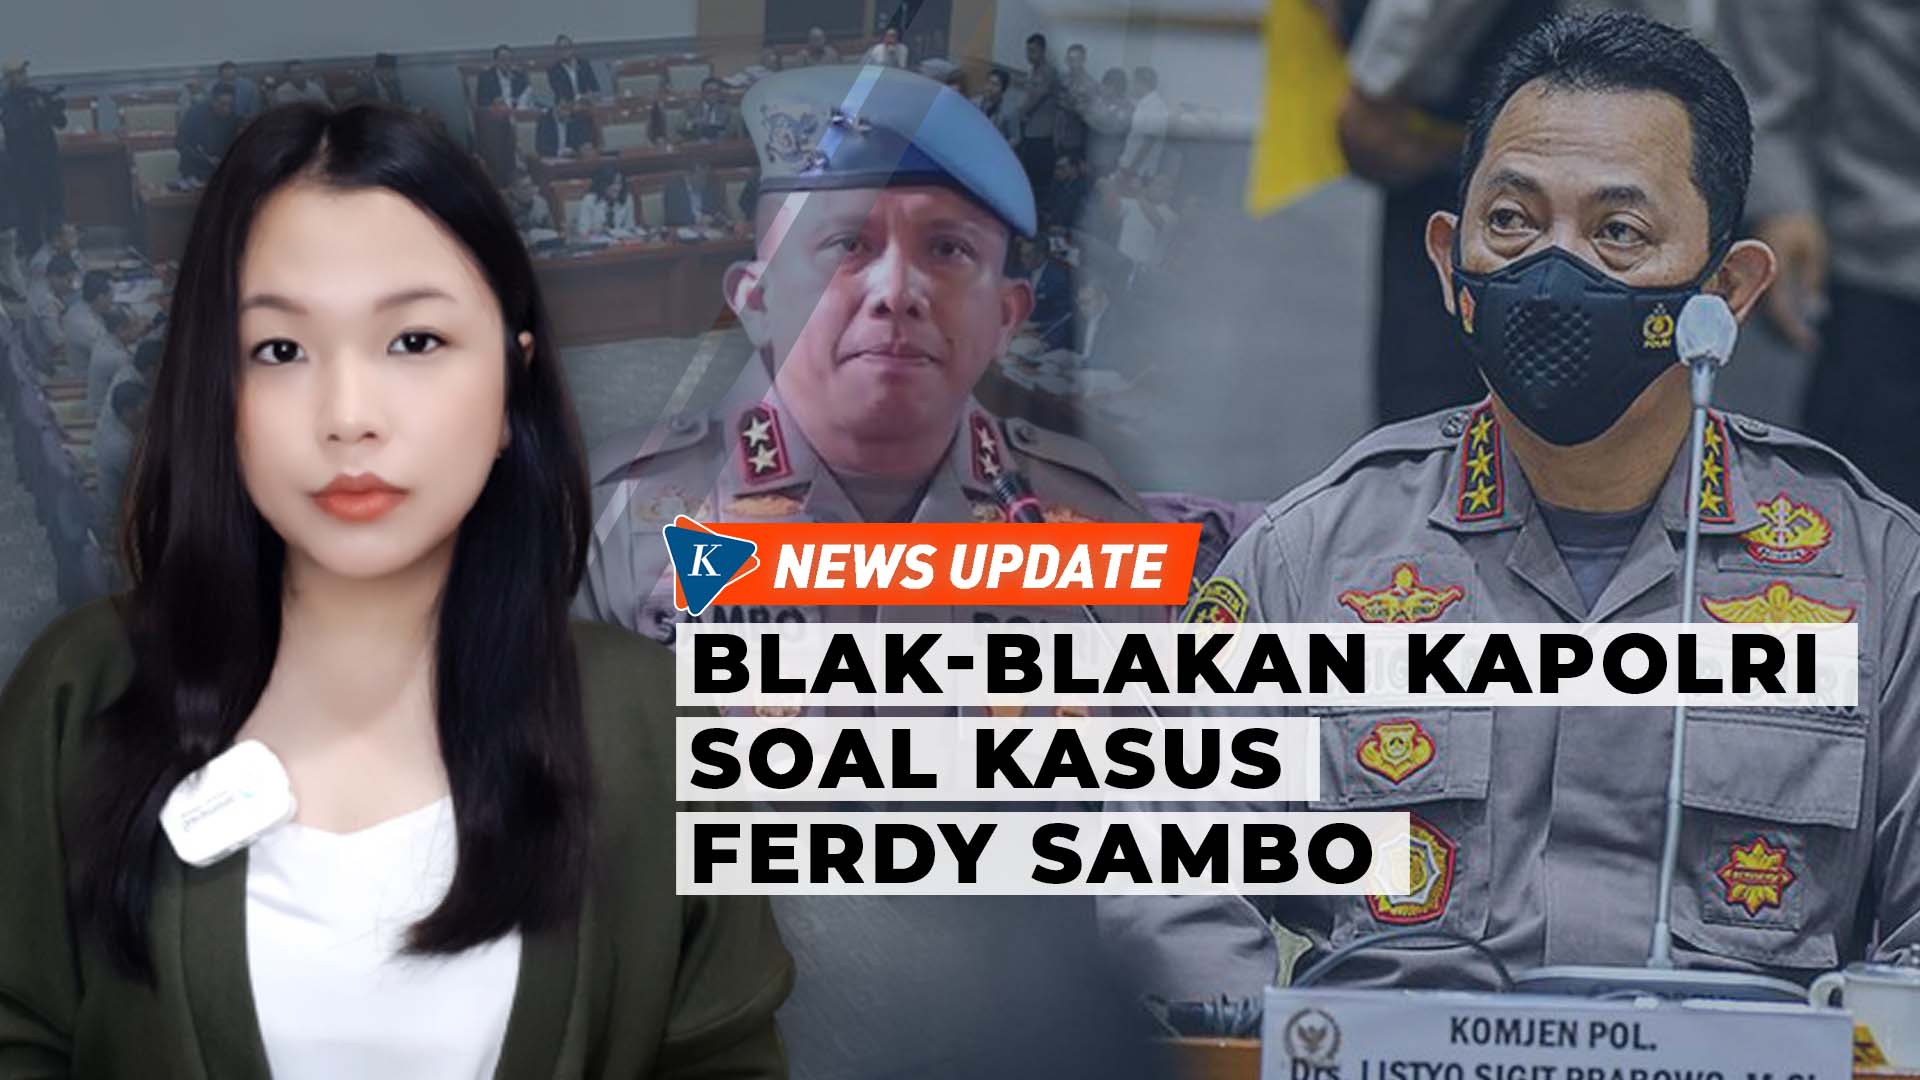 Kapolri Sampaikan Skenario dan Fakta Baru Kasus Ferdy Sambo ke DPR